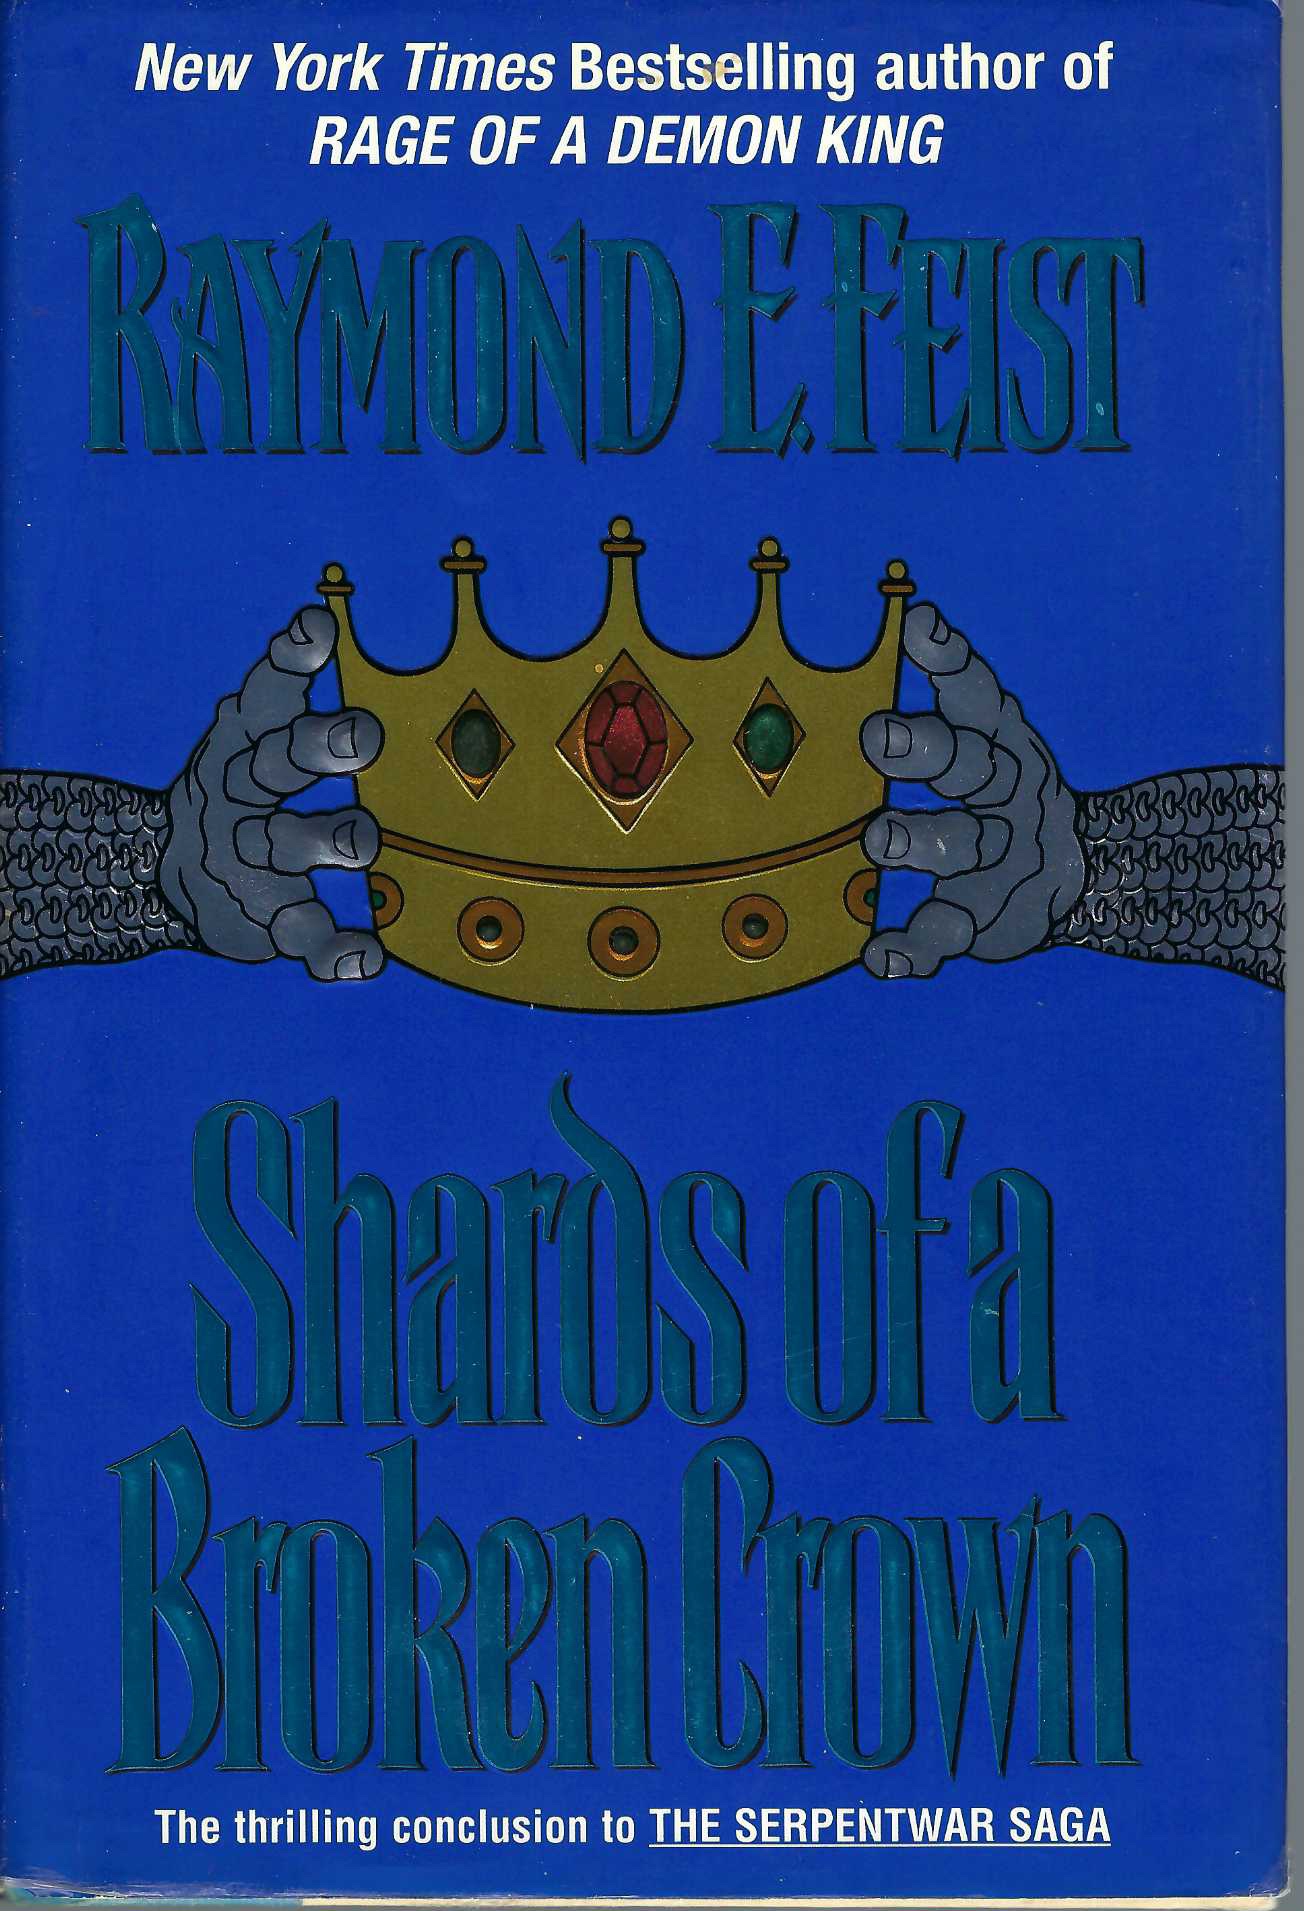 FEIST, RAYMOND E - Shards of a Broken Crown Volume IV of the Serpentwar Saga